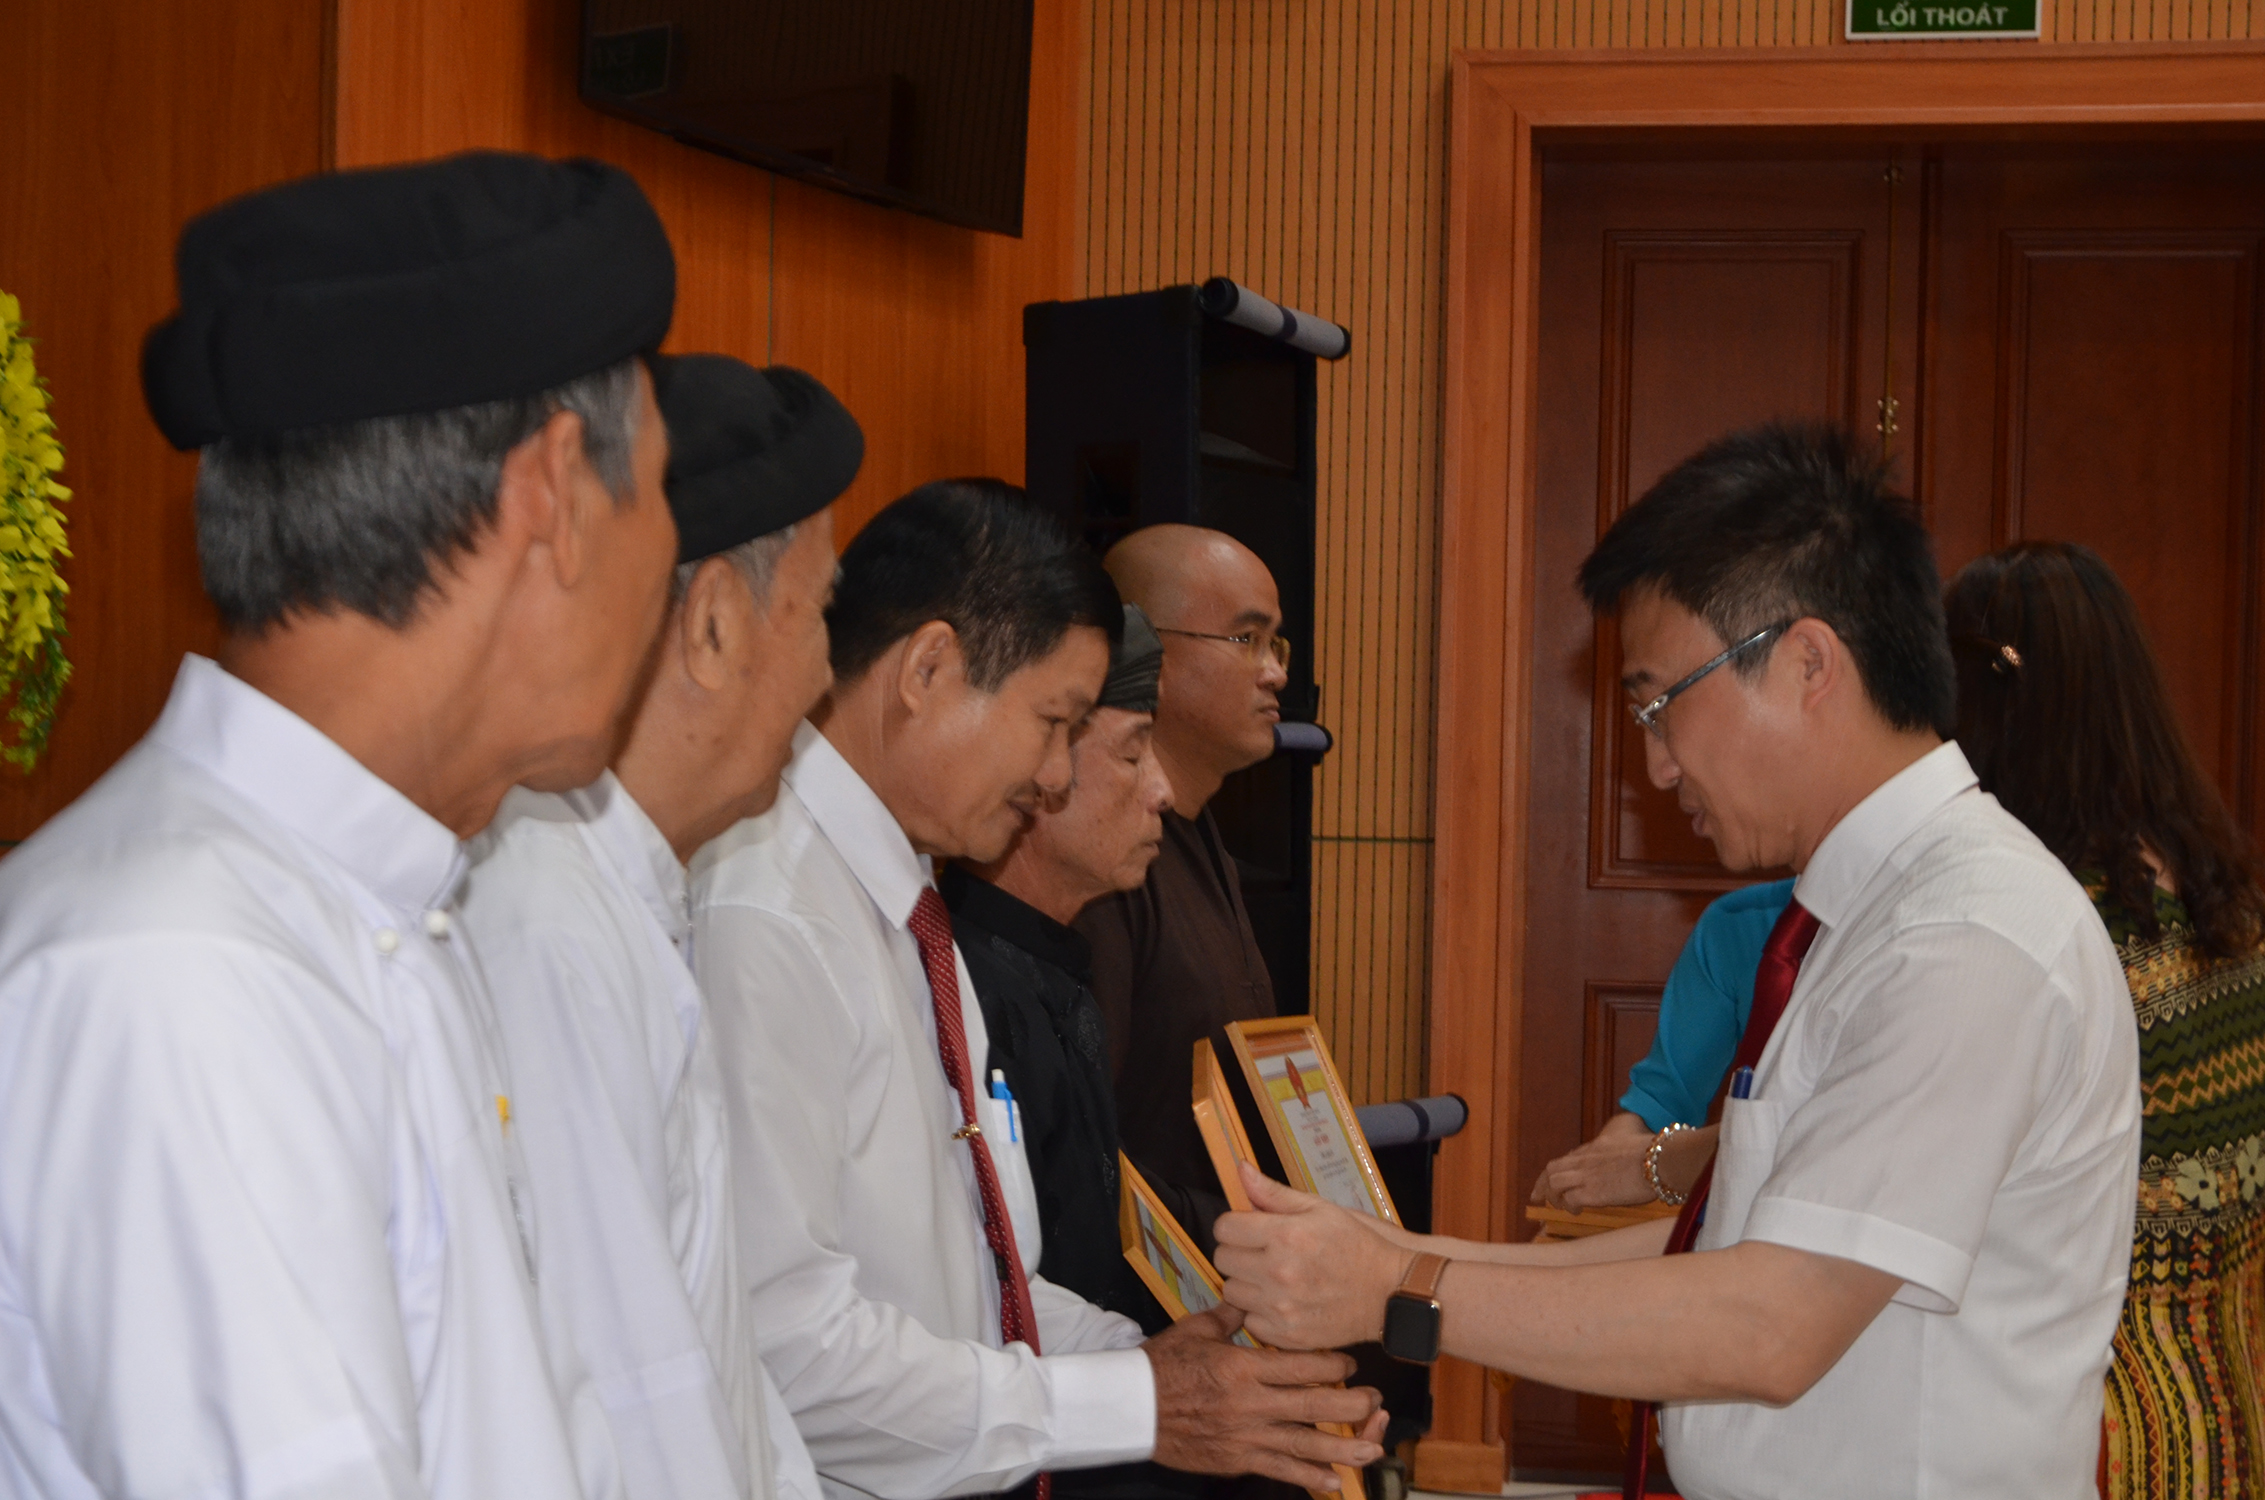 Ông Đặng Minh Thông, Ủy viên Ban Thường vụ Tỉnh ủy, Bí thư Thành ủy Bà Rịa trao Giấy khen cho các tập thể có thành tích xuất sắc trong phong trào thi đua yêu nước giữa các tôn giáo năm 2020.